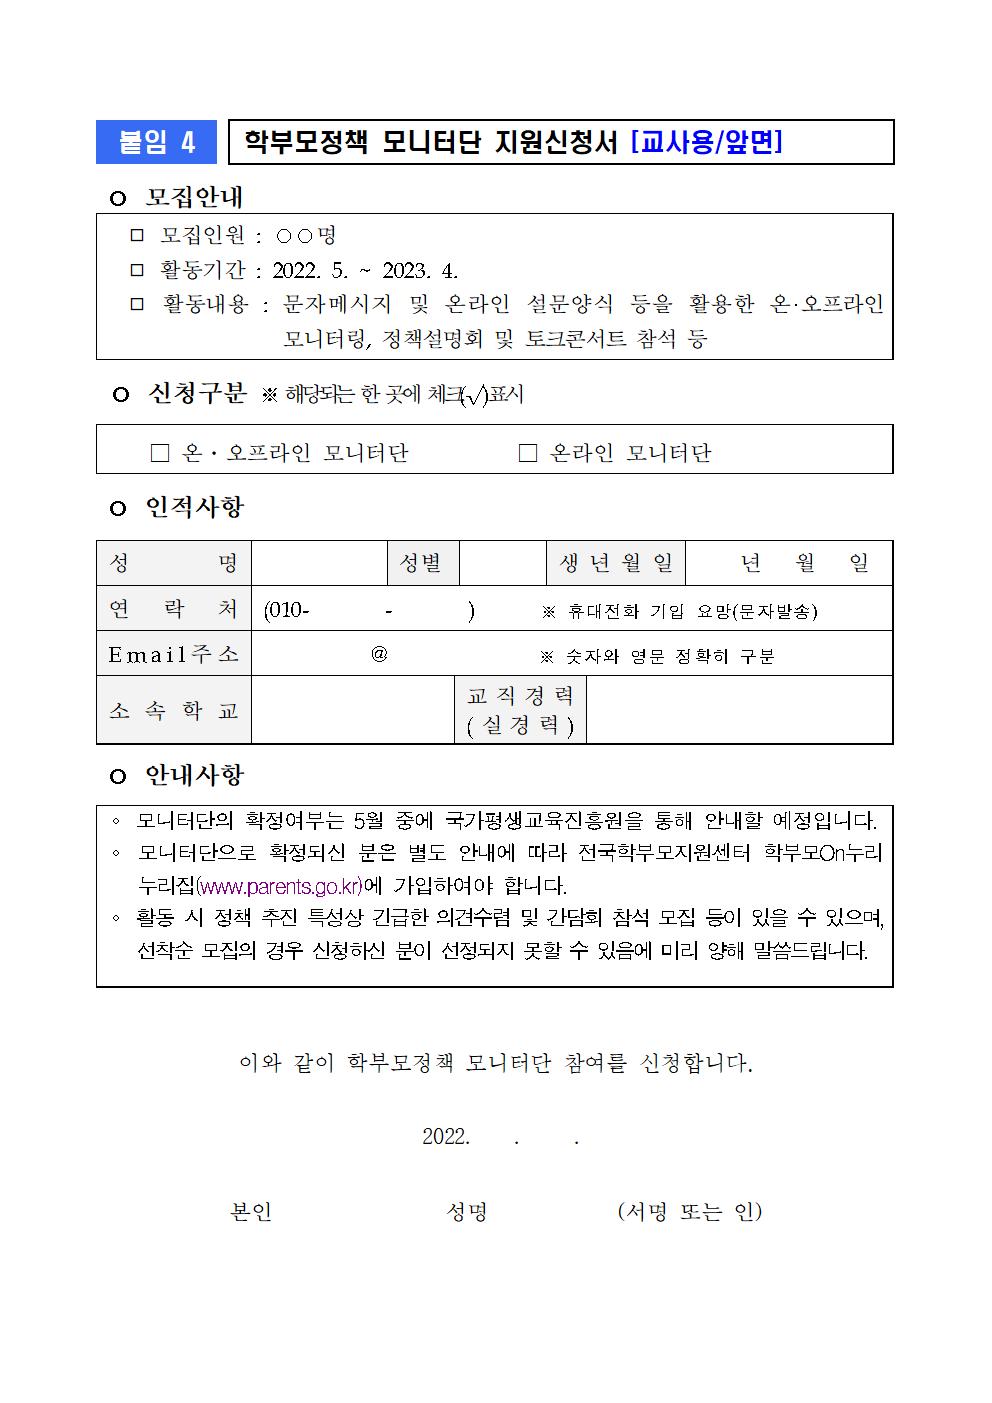 (붙임3) 모니터단 모집 관련 활용 서식(학교용)004